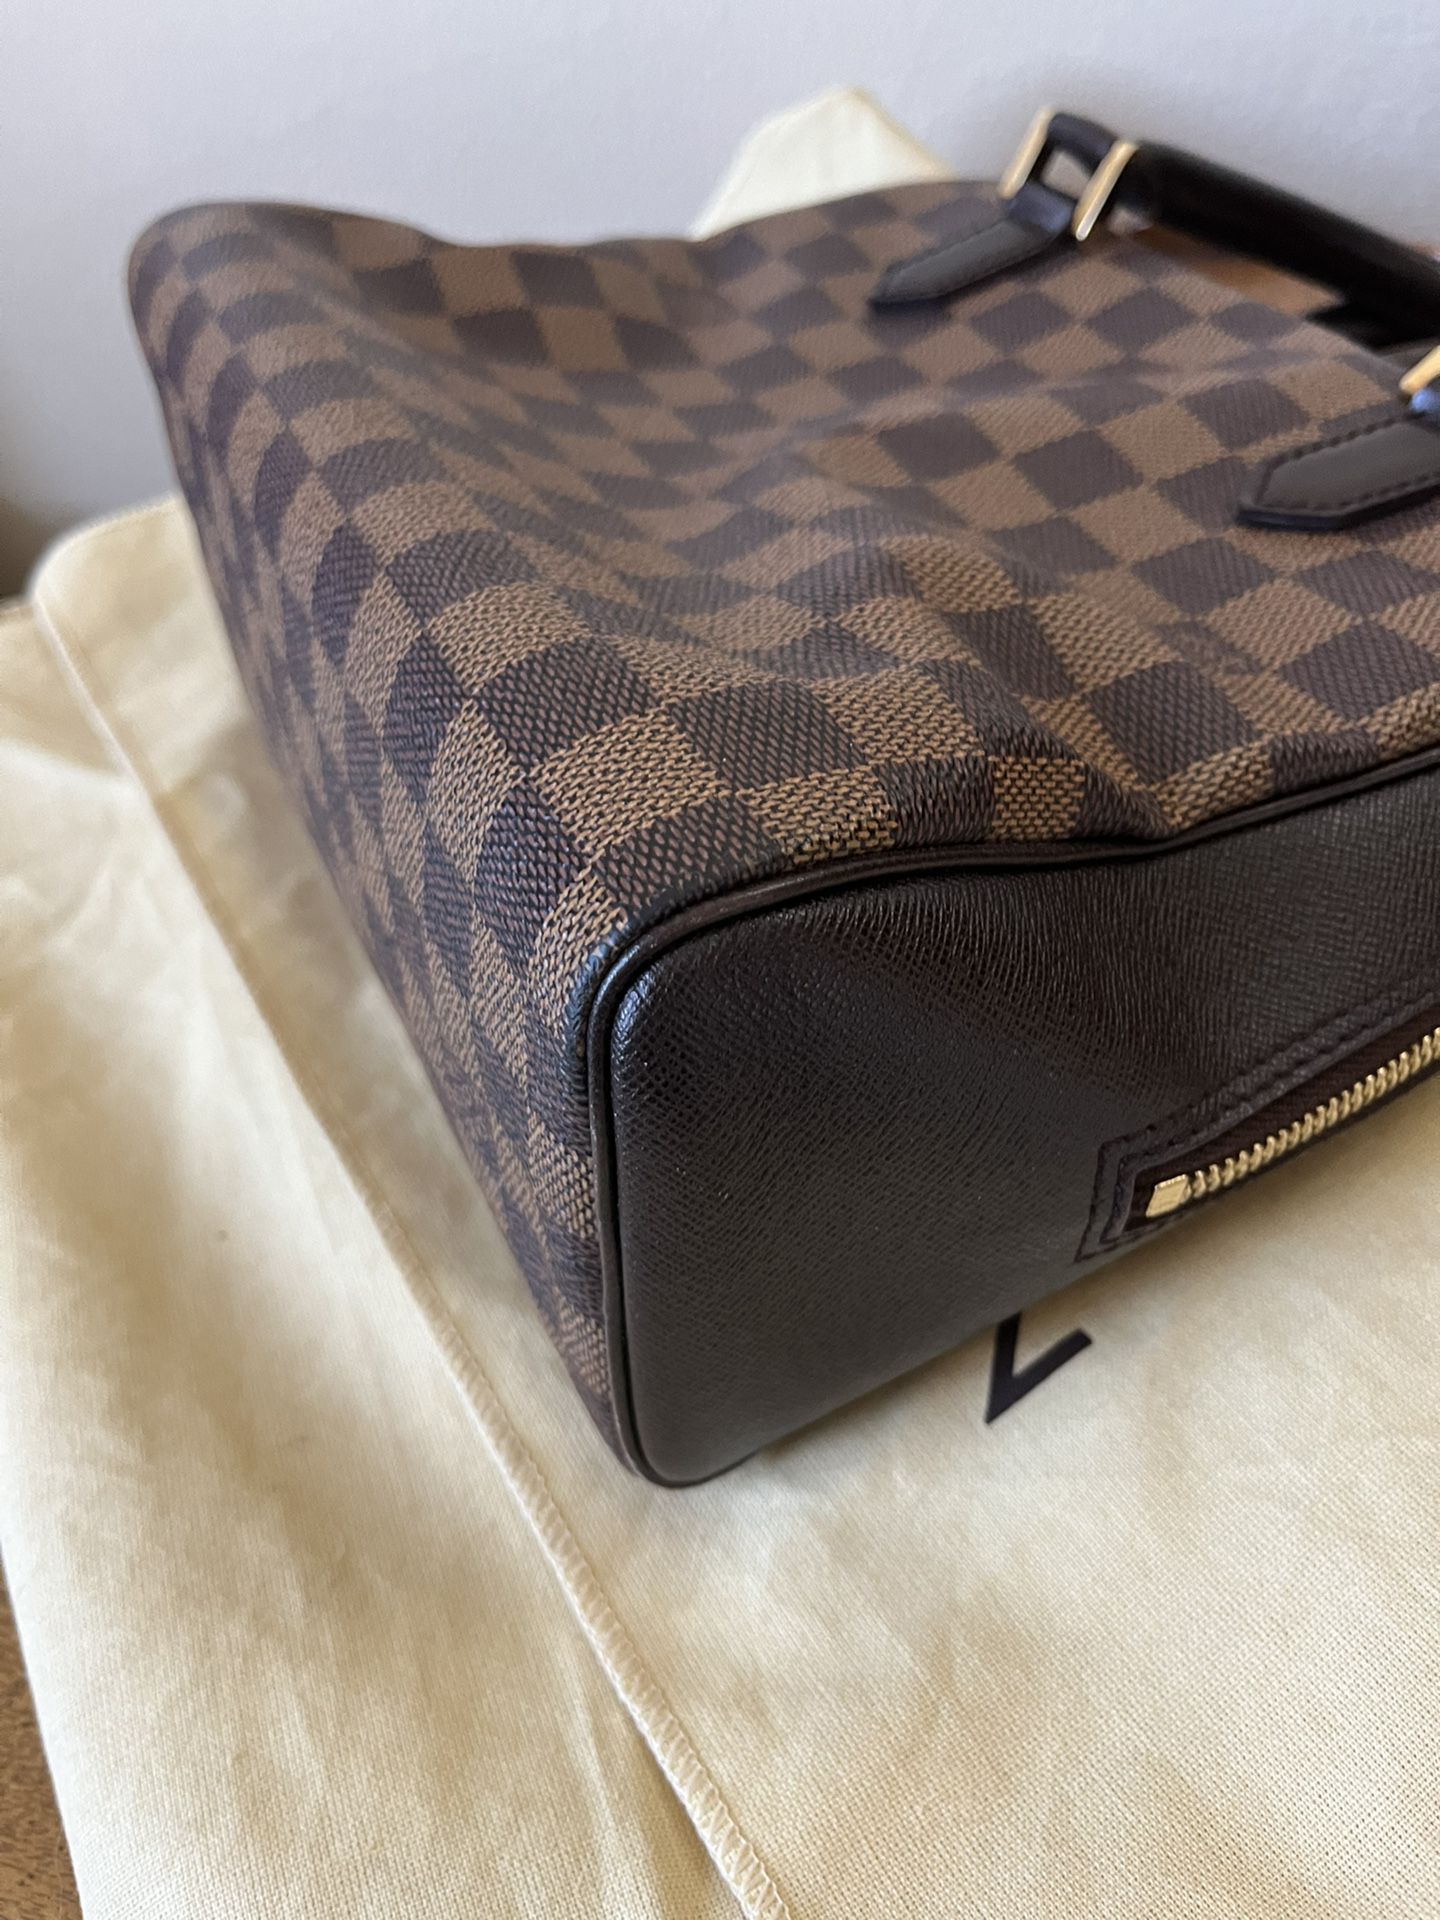 Louis Vuitton Brera Bag Handbag 301170